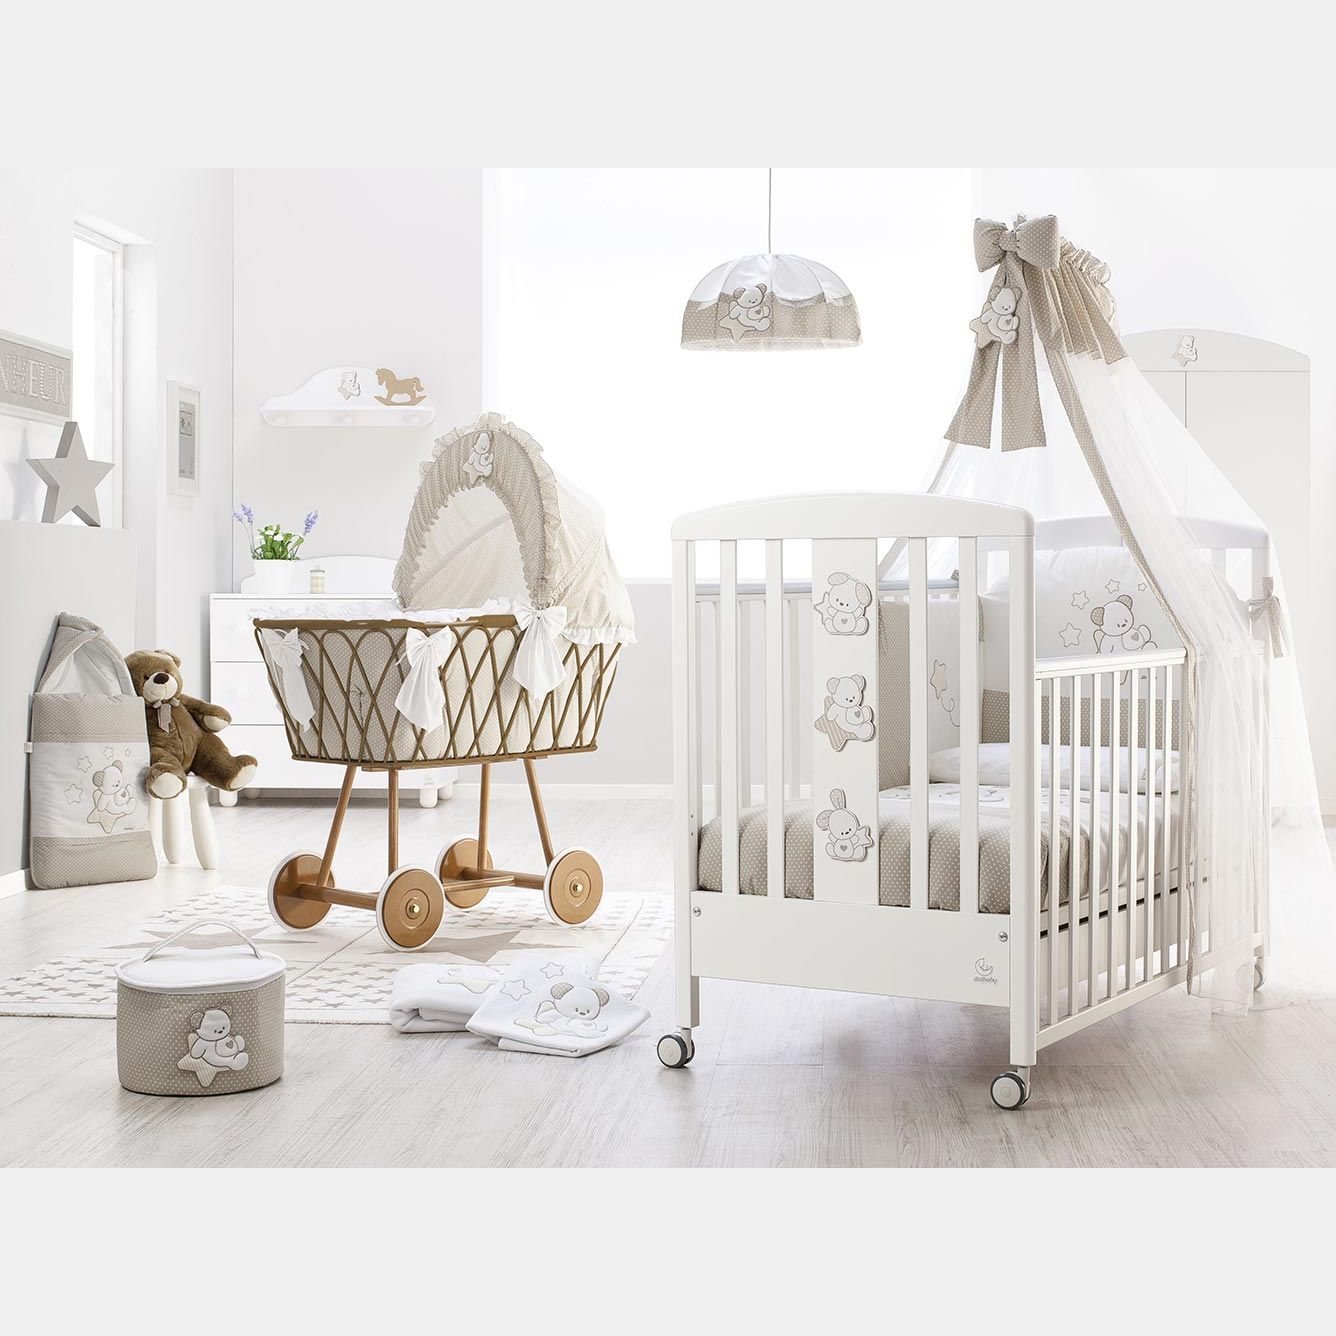 Come scegliere un lettino per neonati